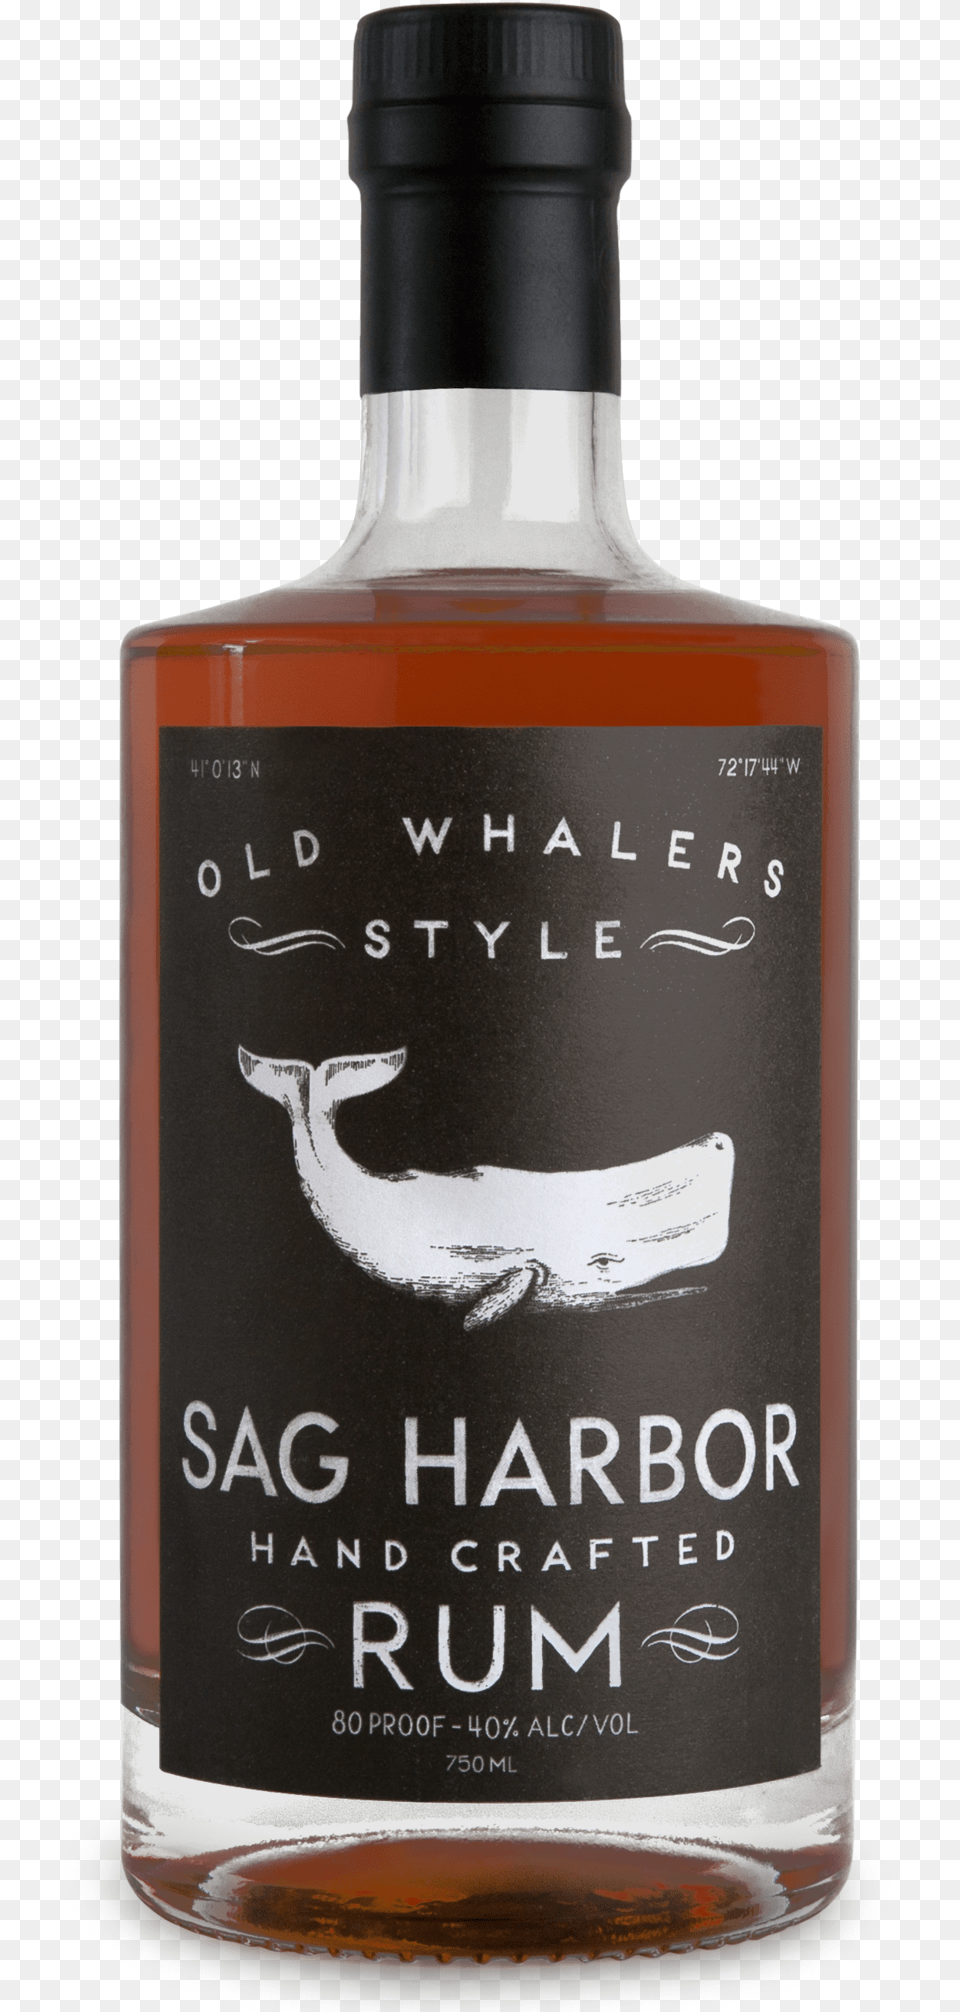 Sag Harbor Old Whalers Rum, Alcohol, Beverage, Liquor, Bottle Png